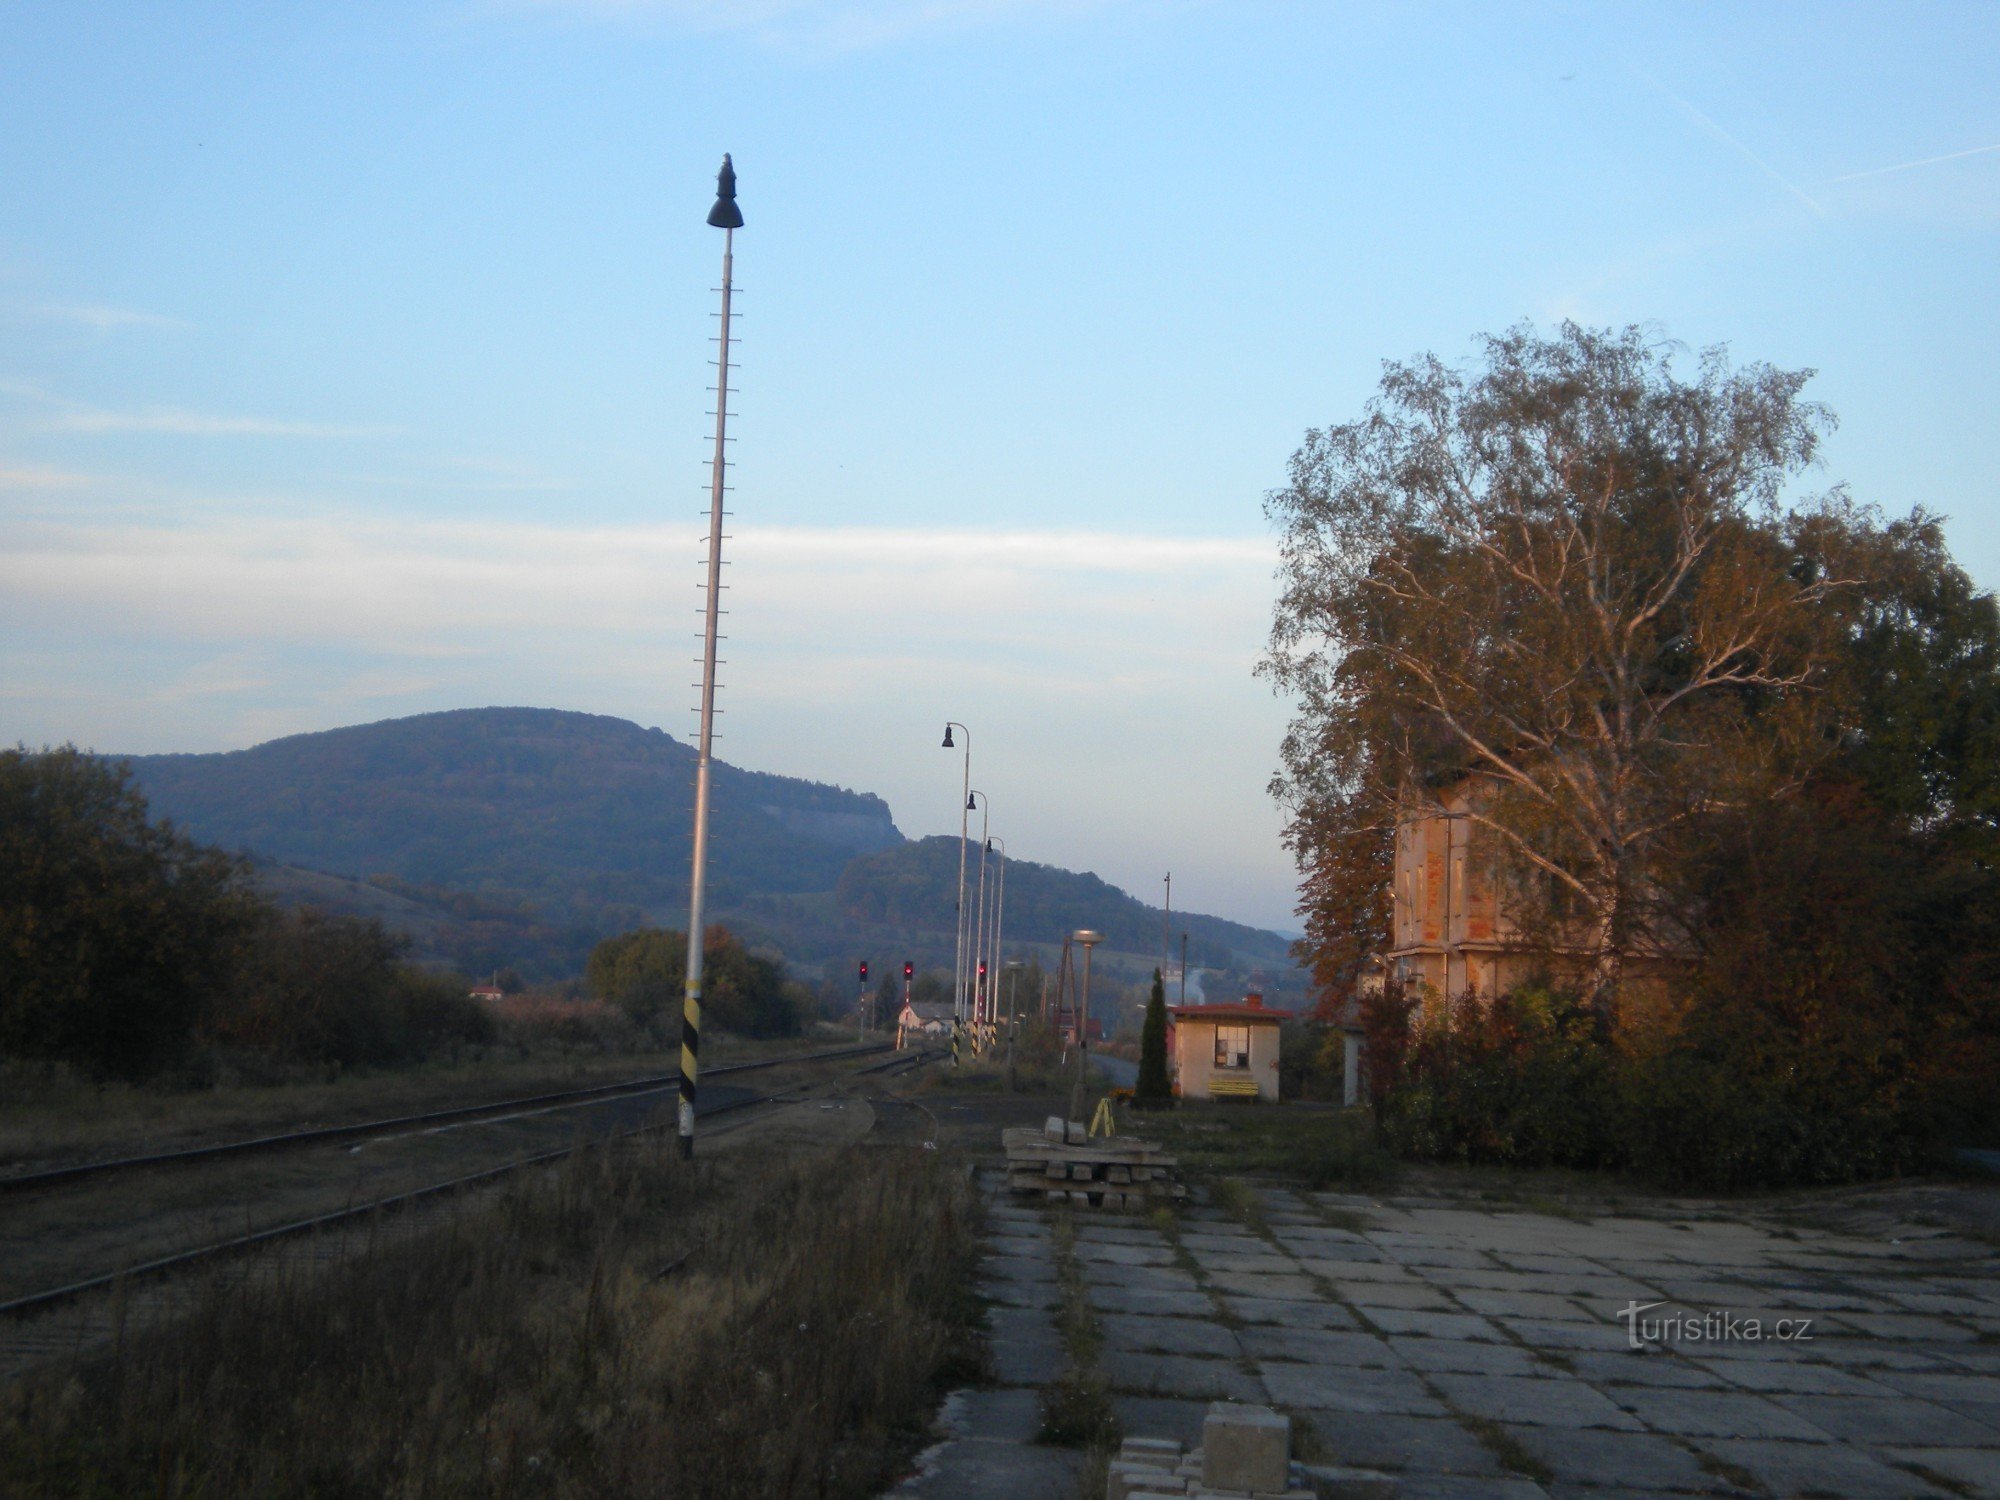 Bahnhof Chotimeř.